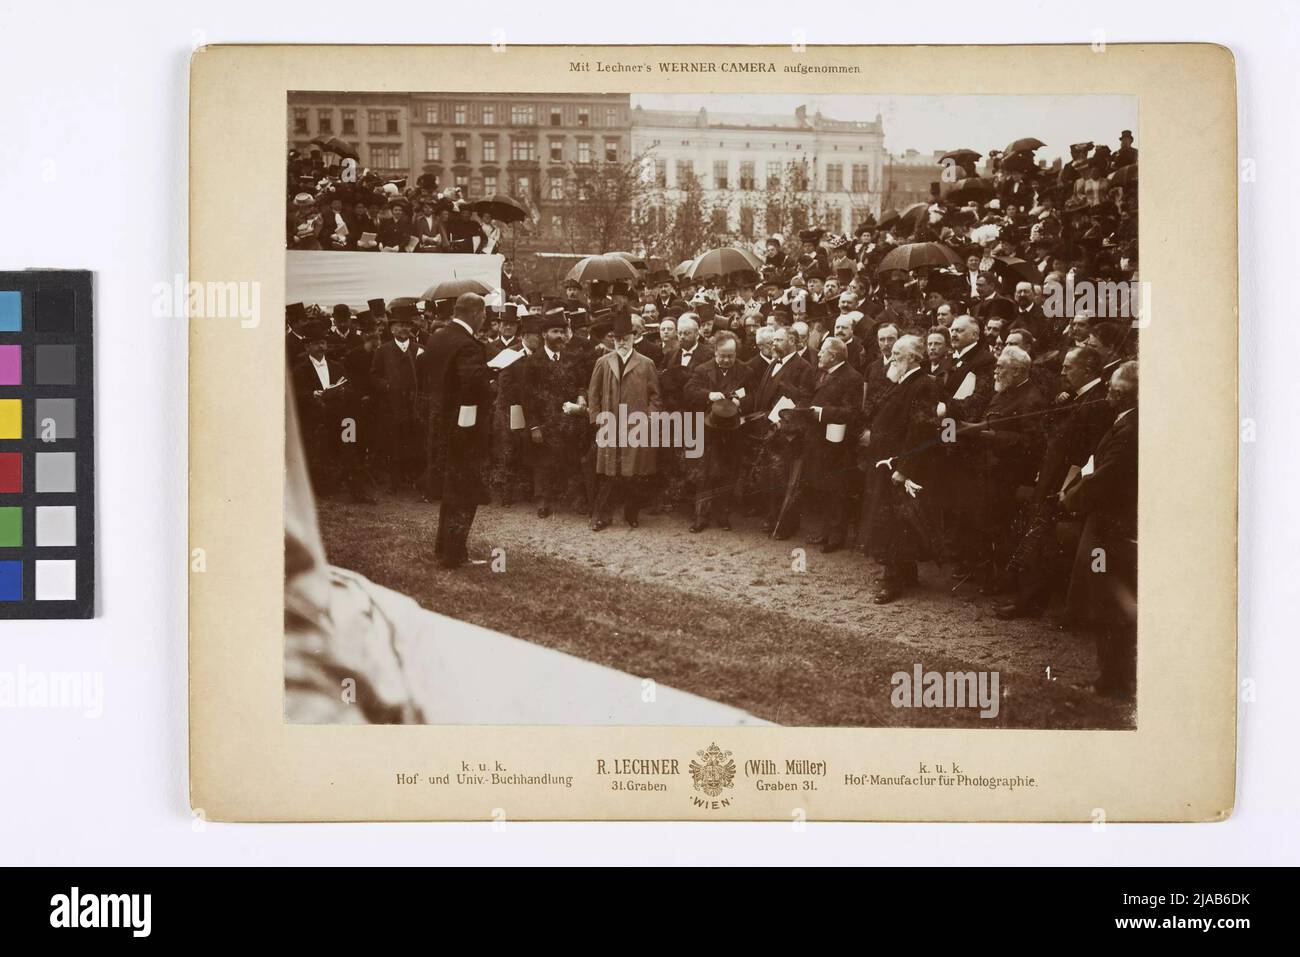 Inaugurazione del monumento di Brahms a Karlsplatz il 7 maggio 1908: Discorso del barone di Weckbecker (Società di Musica Freunde) al vice sindaco Neumayer. Verlag o k. u. k. Libreria universitaria R. Lechner (Wilh. Müller), fotografo, editore Foto Stock